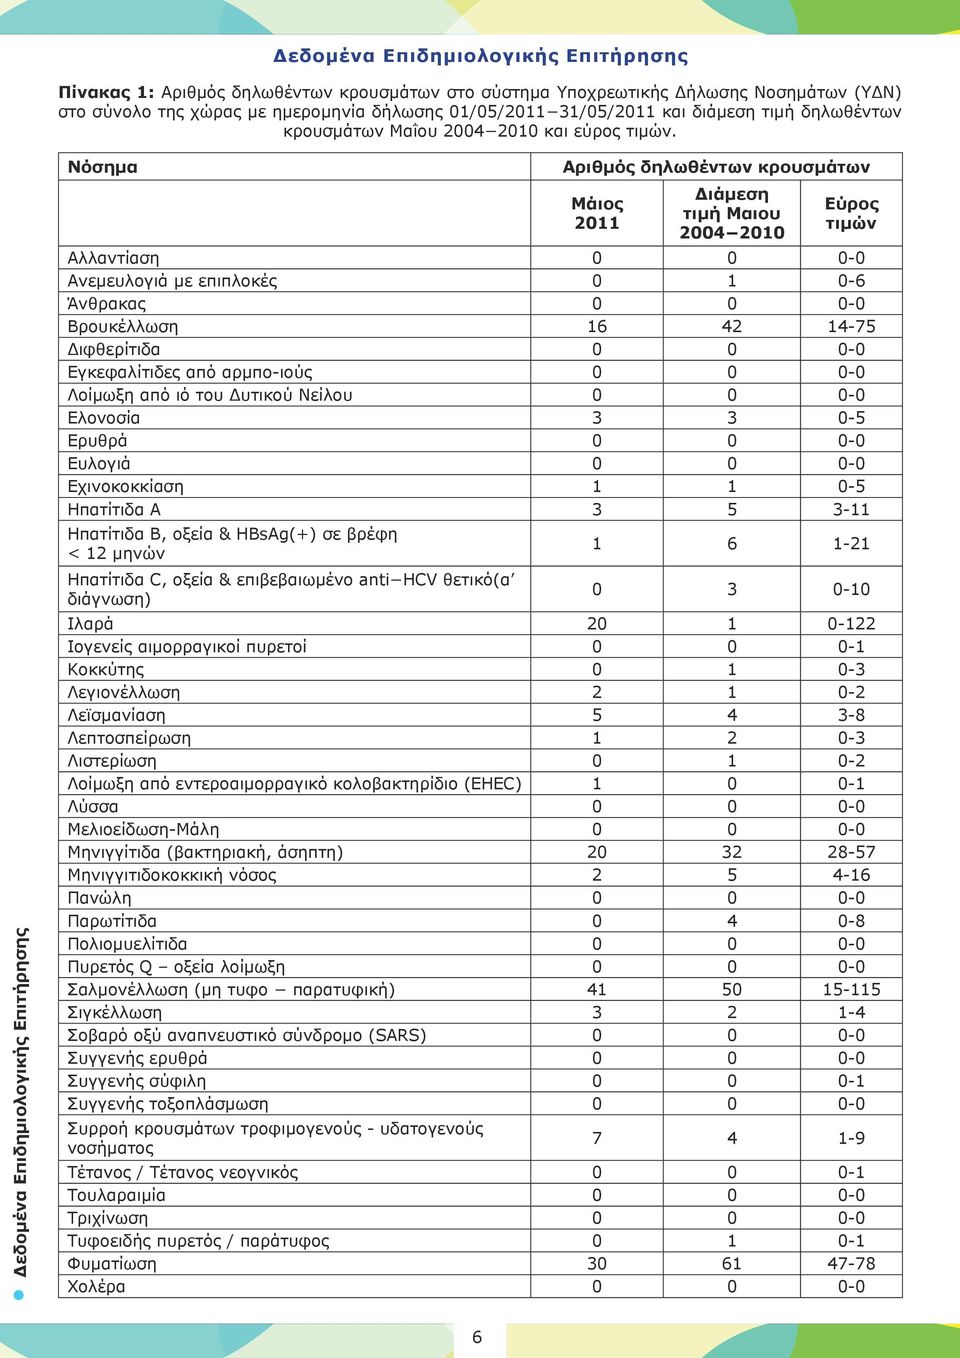 Δεδομένα Επιδημιολογικής Επιτήρησης Νόσημα Αριθμός δηλωθέντων κρουσμάτων Μάιος 2011 Διάμεση τιμή Μαιου 2004 2010 Εύρος τιμών Αλλαντίαση 0 0 0-0 Ανεμευλογιά με επιπλοκές 0 1 0-6 Άνθρακας 0 0 0-0